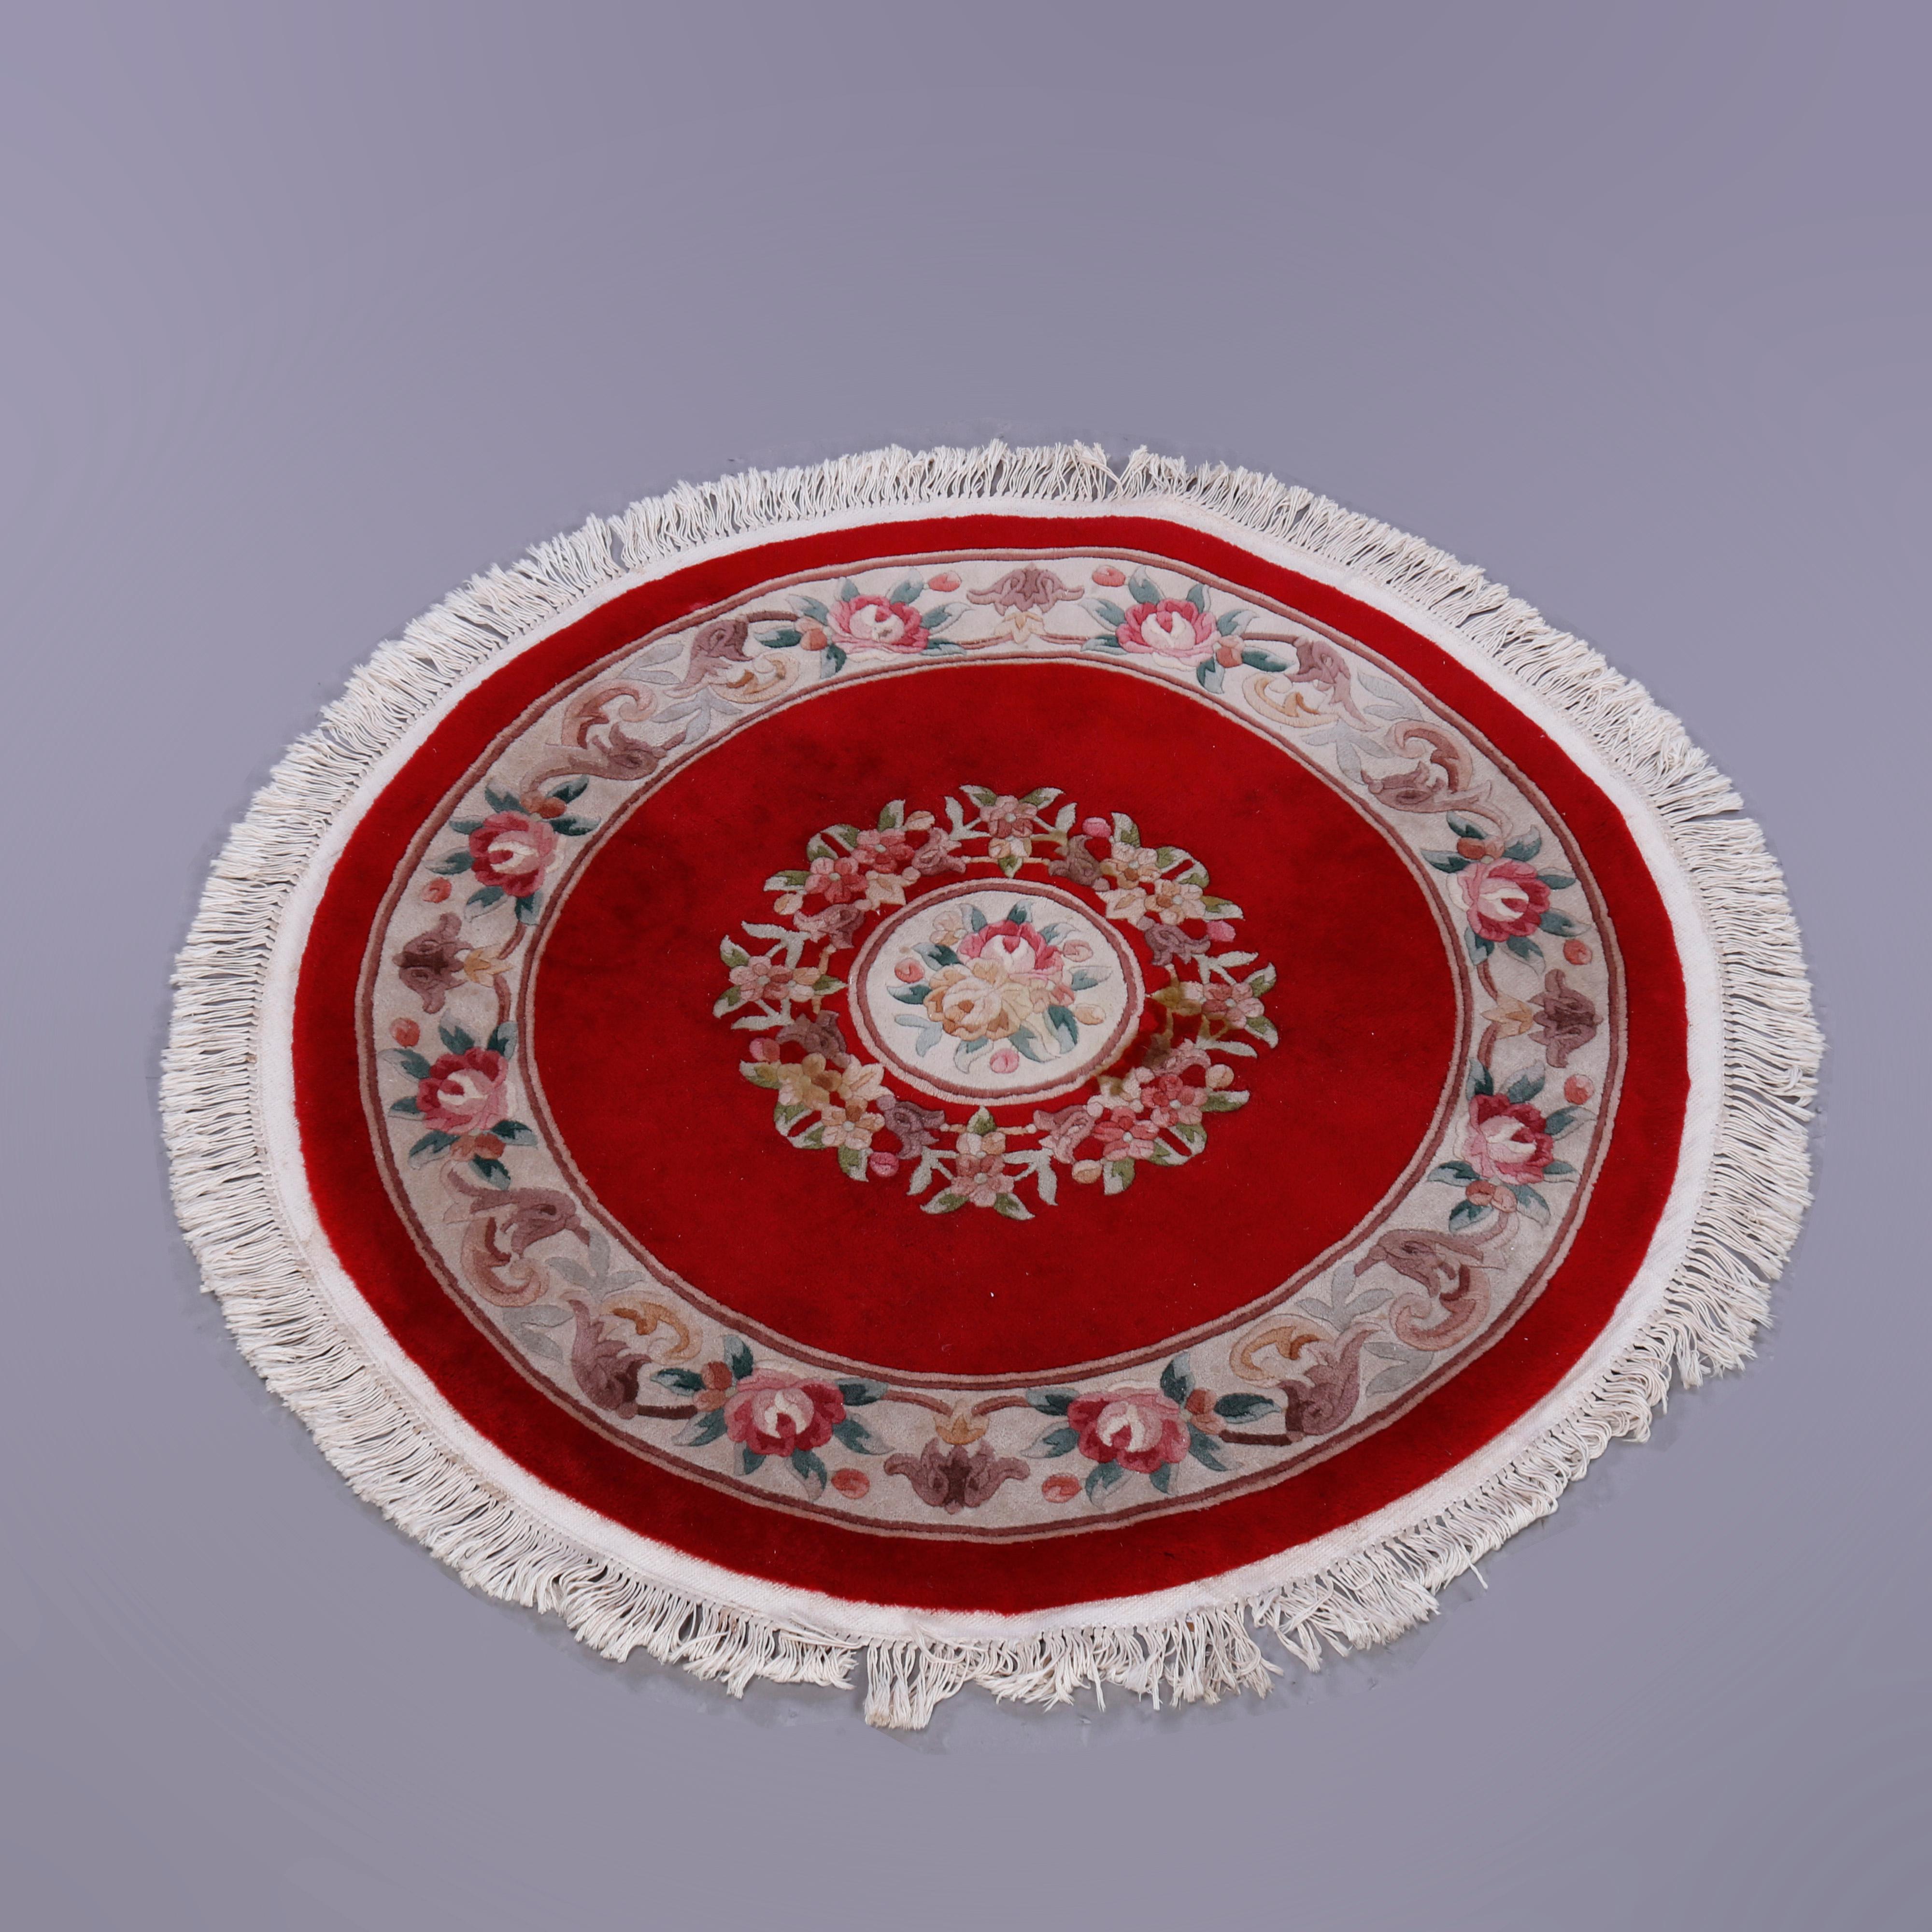 Un tapis oriental chinois Nichols offre une construction en laine de forme circulaire avec médaillon floral central sur fond rouge, c1940

Mesures - 55''H x 55''W x 1''D.

Note sur le catalogue : Demandez les TARIFS DE LIVRAISON RÉDUITS disponibles